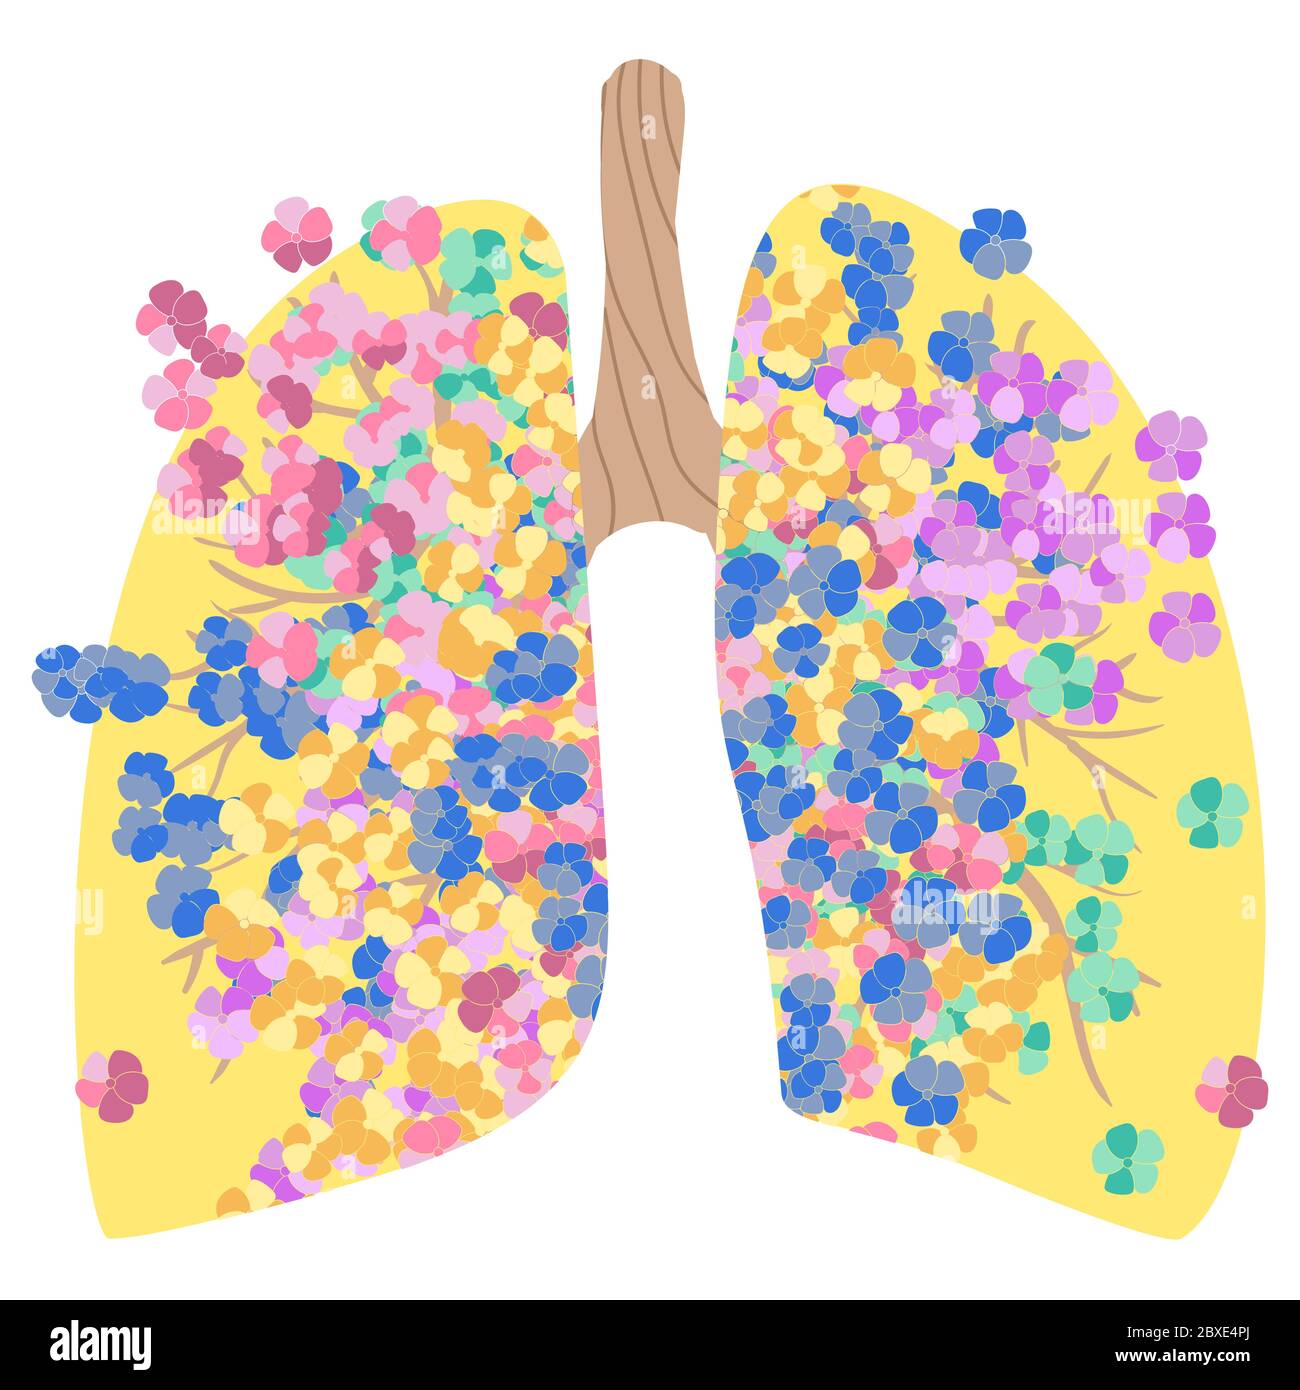 Ballonnements, poumons sains. Journée mondiale contre la pneumonie. La lutte contre la tuberculose en médecine. Les poumons du fumeur et en bonne santé. Illustration de Vecteur